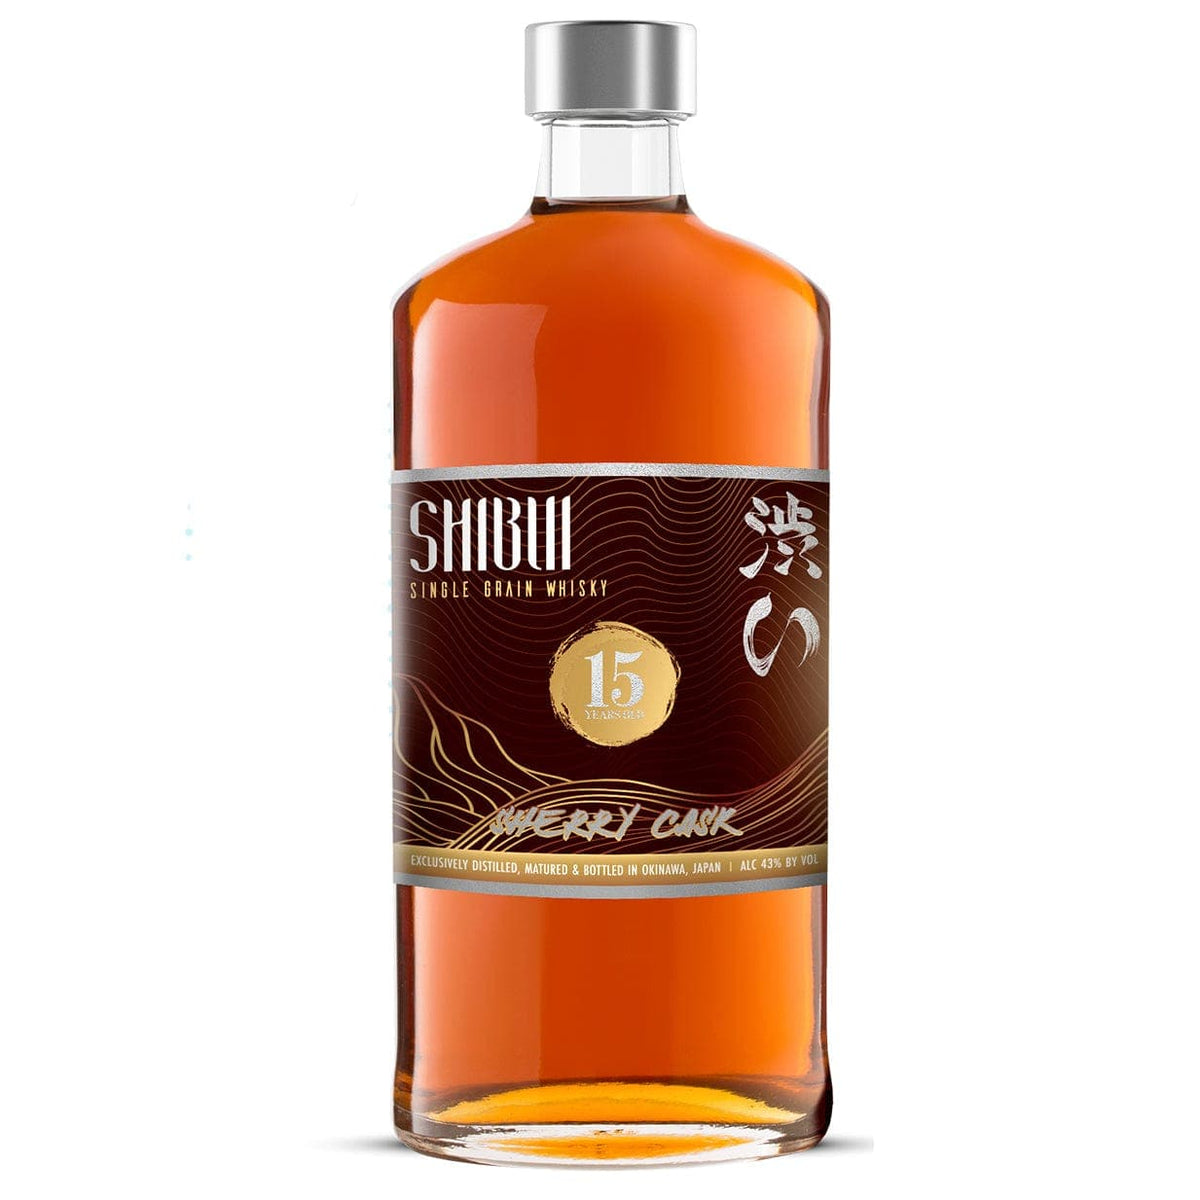 Shibui Sherry Cask 15 Year - Barbank